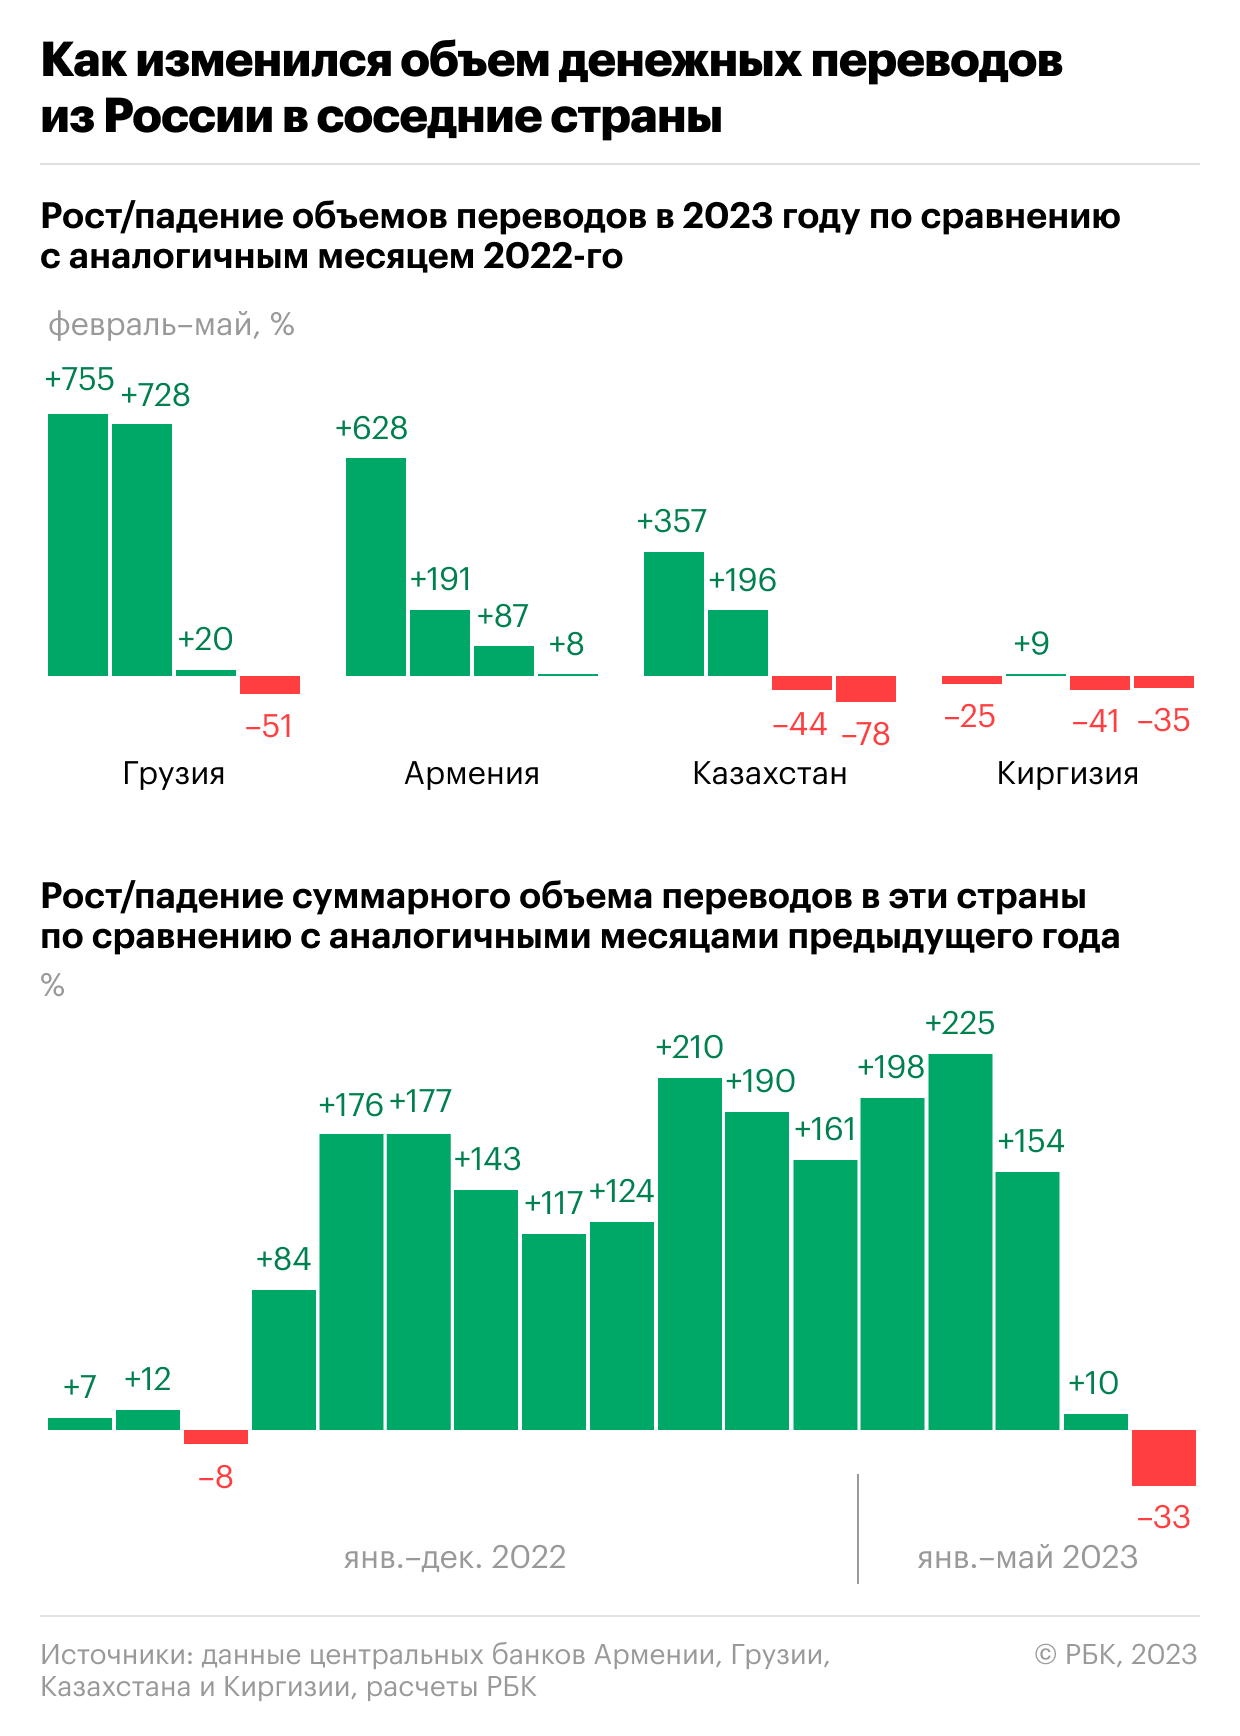 Переводы из России в соседние страны снизились впервые с марта 2022 года